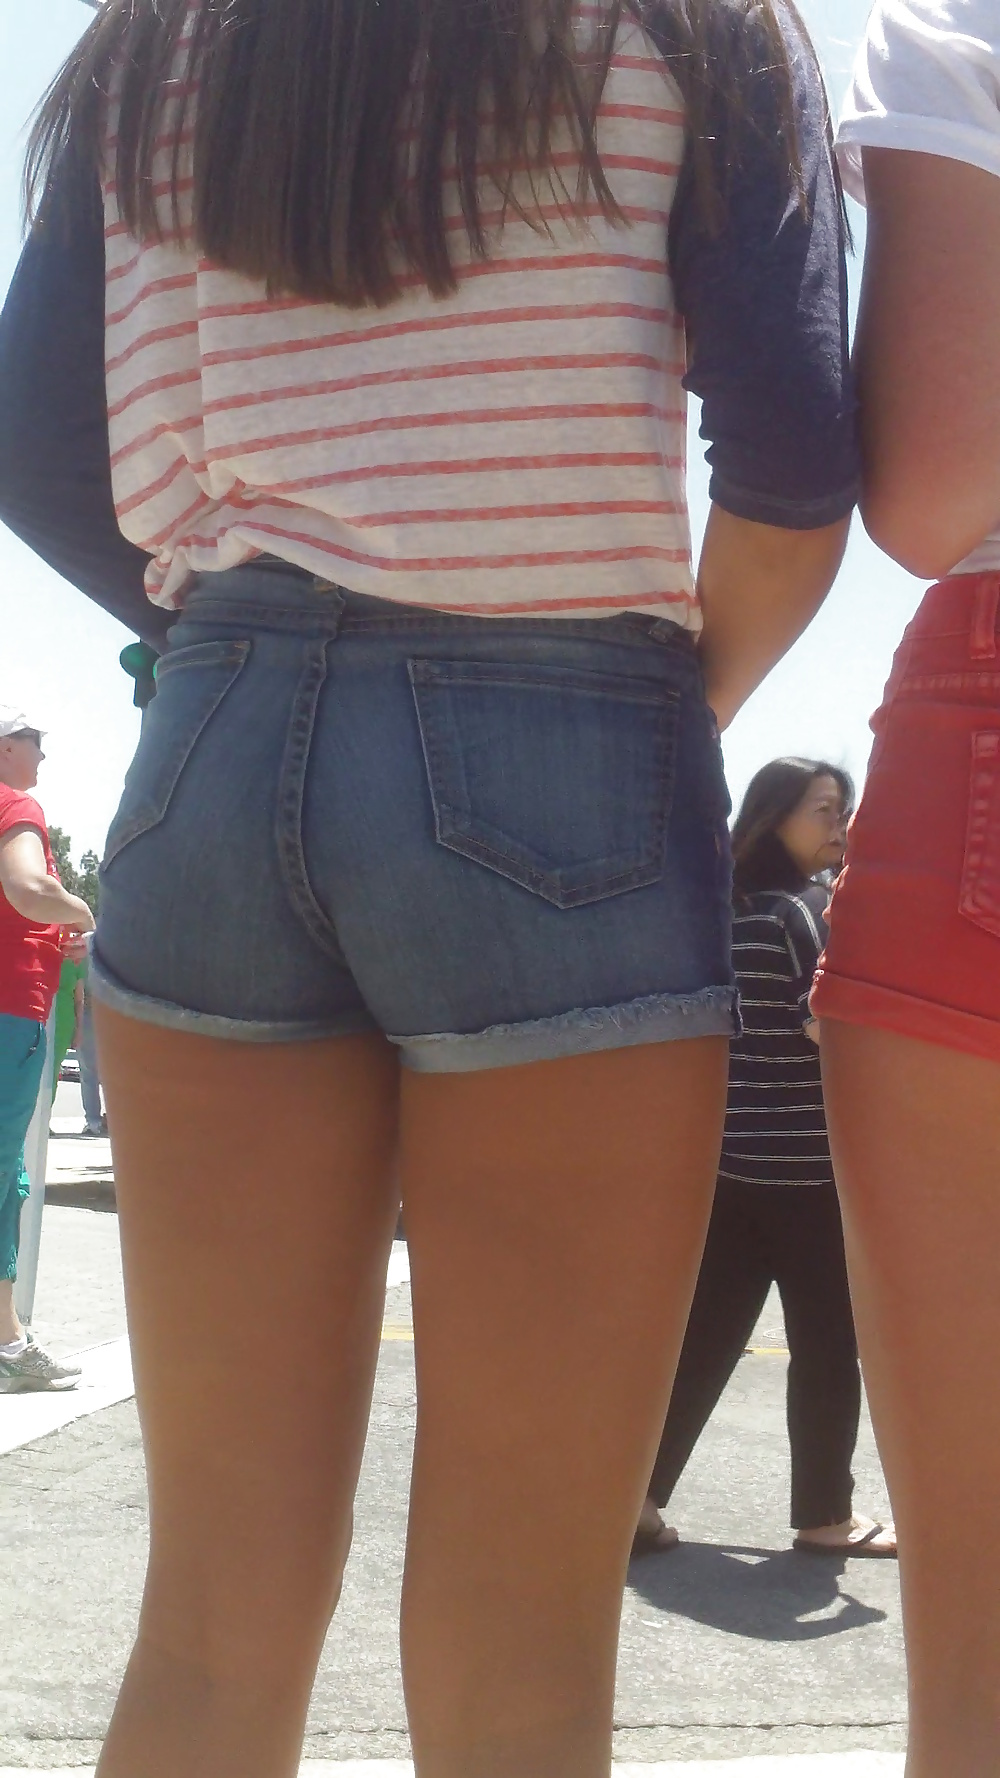 Popular teen girls ass & butt in jeans part 4  #26741925